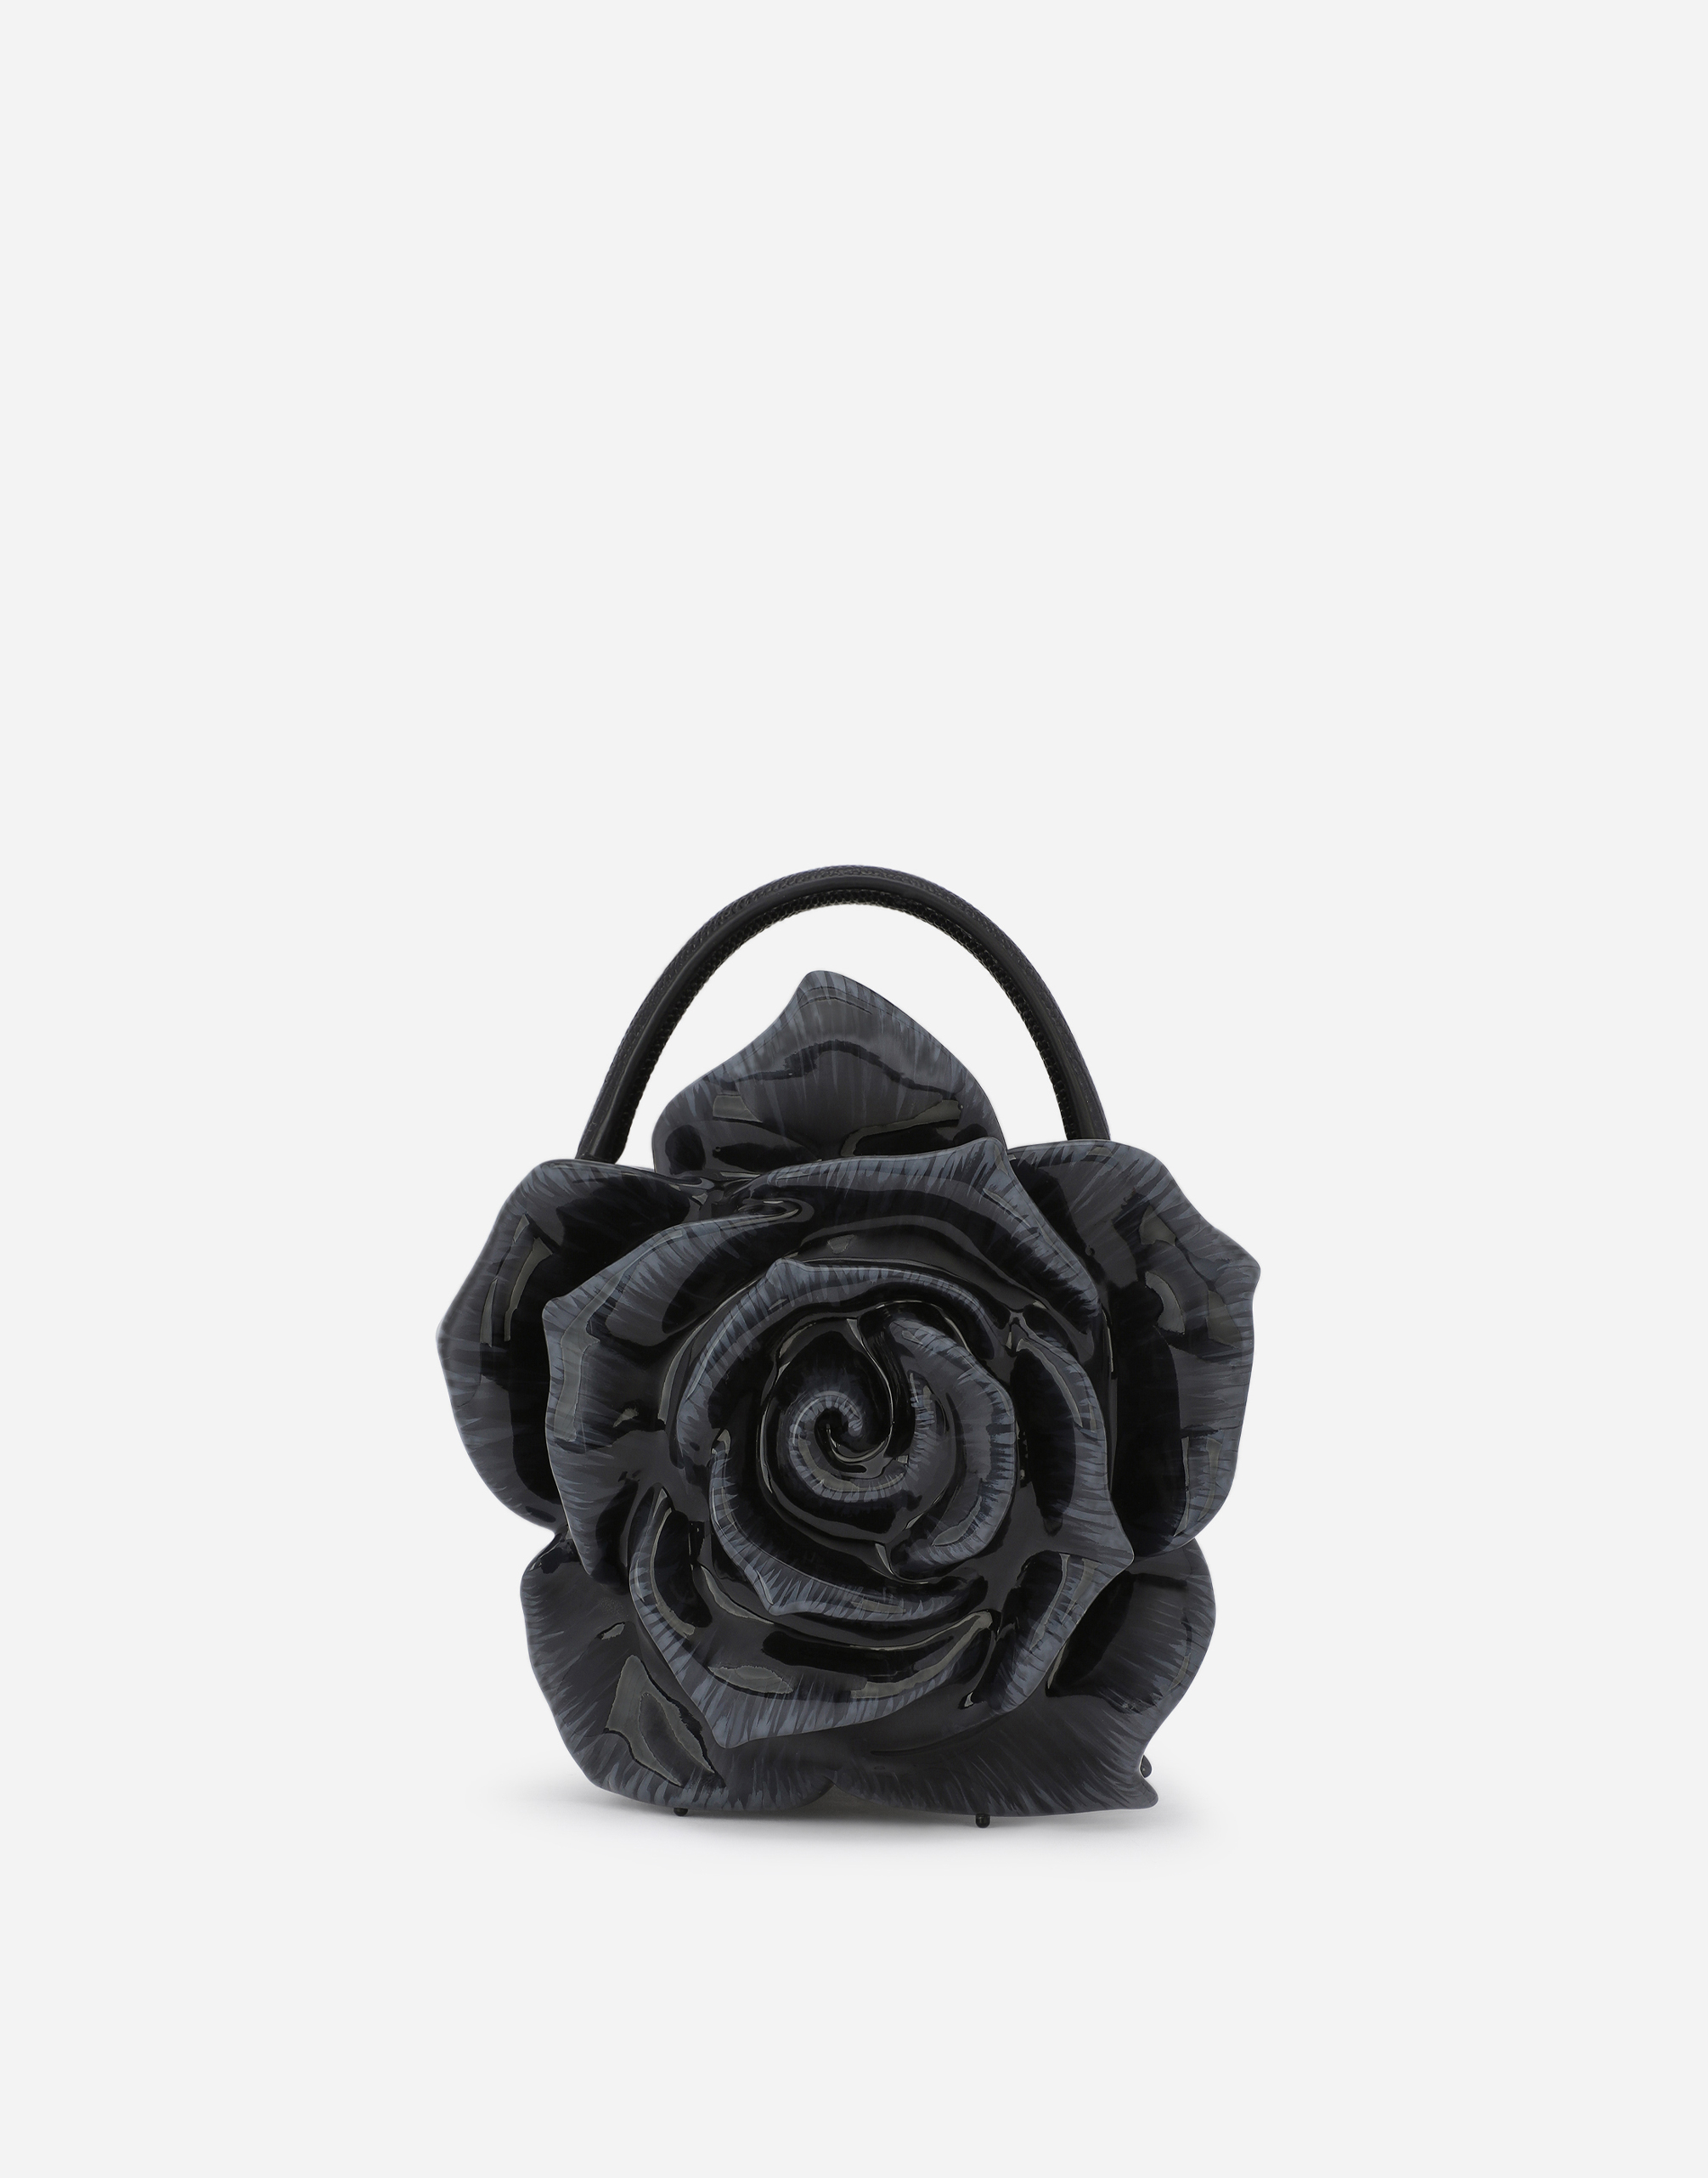 Resin rose-design Dolce Box bag in Black